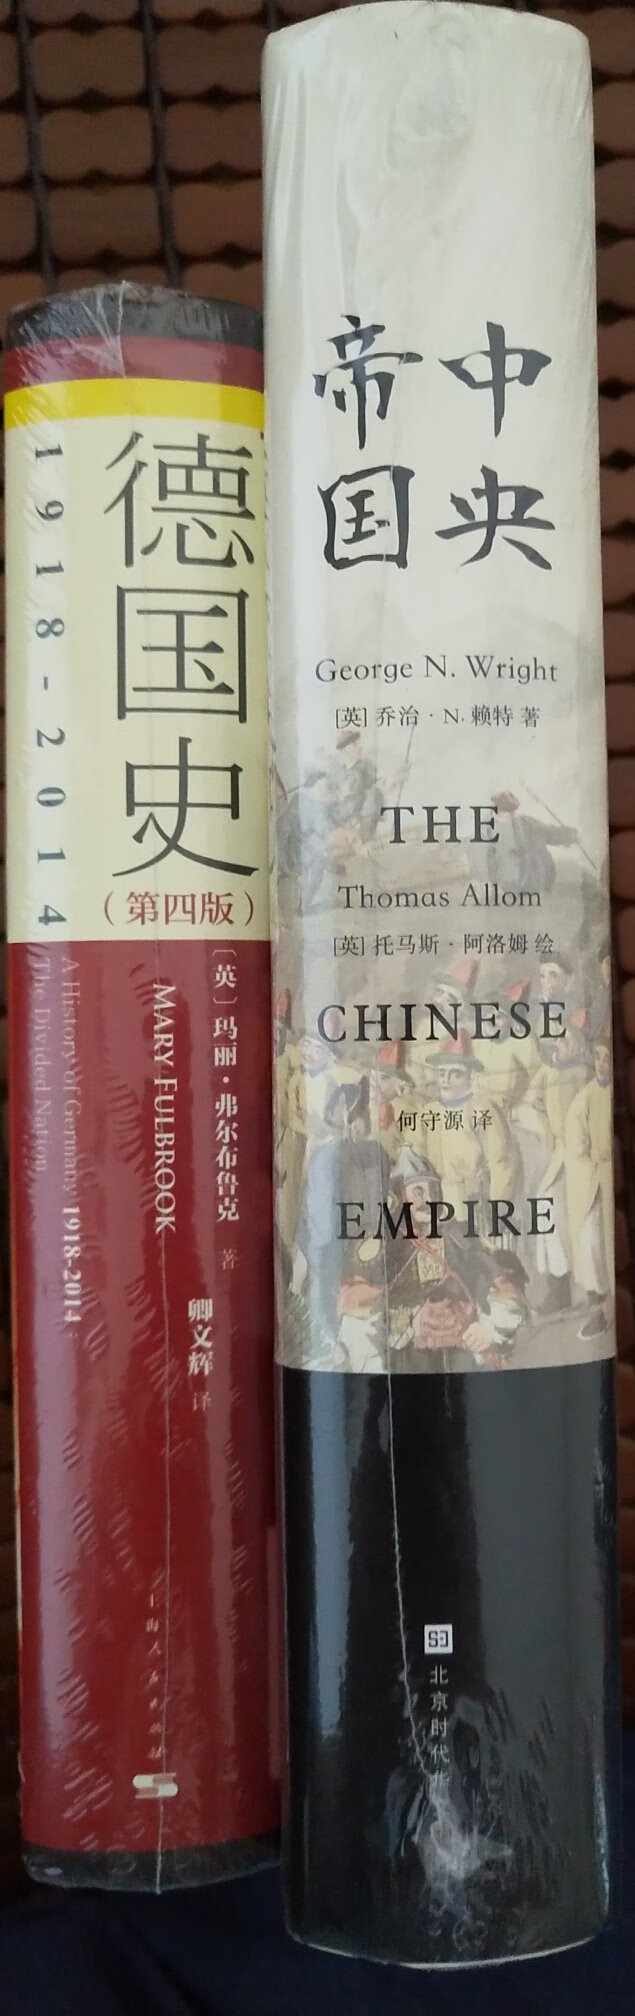 中国在1840年以前多是一个“中央大帝国”的姿态，因为中国比欧洲早了近一千年时间完成了从奴隶社会到封建时代的转型，创造了许多的奇迹和世界第一，常常能感受到中华文化对周边地区乃至世界的影响。正因为“东学西渐”的影响，所以直到在19世纪的欧美人眼中，名为“清”的“中央帝国”是世界第一大国，同时也是一个神秘而遥远的国度。有识之士渴望了解泱泱中华的古老文明、礼仪风范、文学艺术与科学技术，揭开这个东方大国的神秘面纱，而这本书正是以世界人之眼看中国的历史巨著，是西方世界对中国的“观看角度”与科学记录。在书中那一幅幅细腻生动的画作勾勒出晚清社会朝野的市井浮世绘，像一幅辽阔的中华帝国全景图徐徐展现在眼前。英国作家乔治·N.赖特的撰文解说，可以说是从一个独特的视角真实地反映了中国的历史、社会、民俗、文化以及东西方的文化交流。书很厚，内容详实，内含丰富的历史细节，需要耐性好好读一读。商家服务态度很好，发货及时物流很快，快递小哥细心周到人很好！